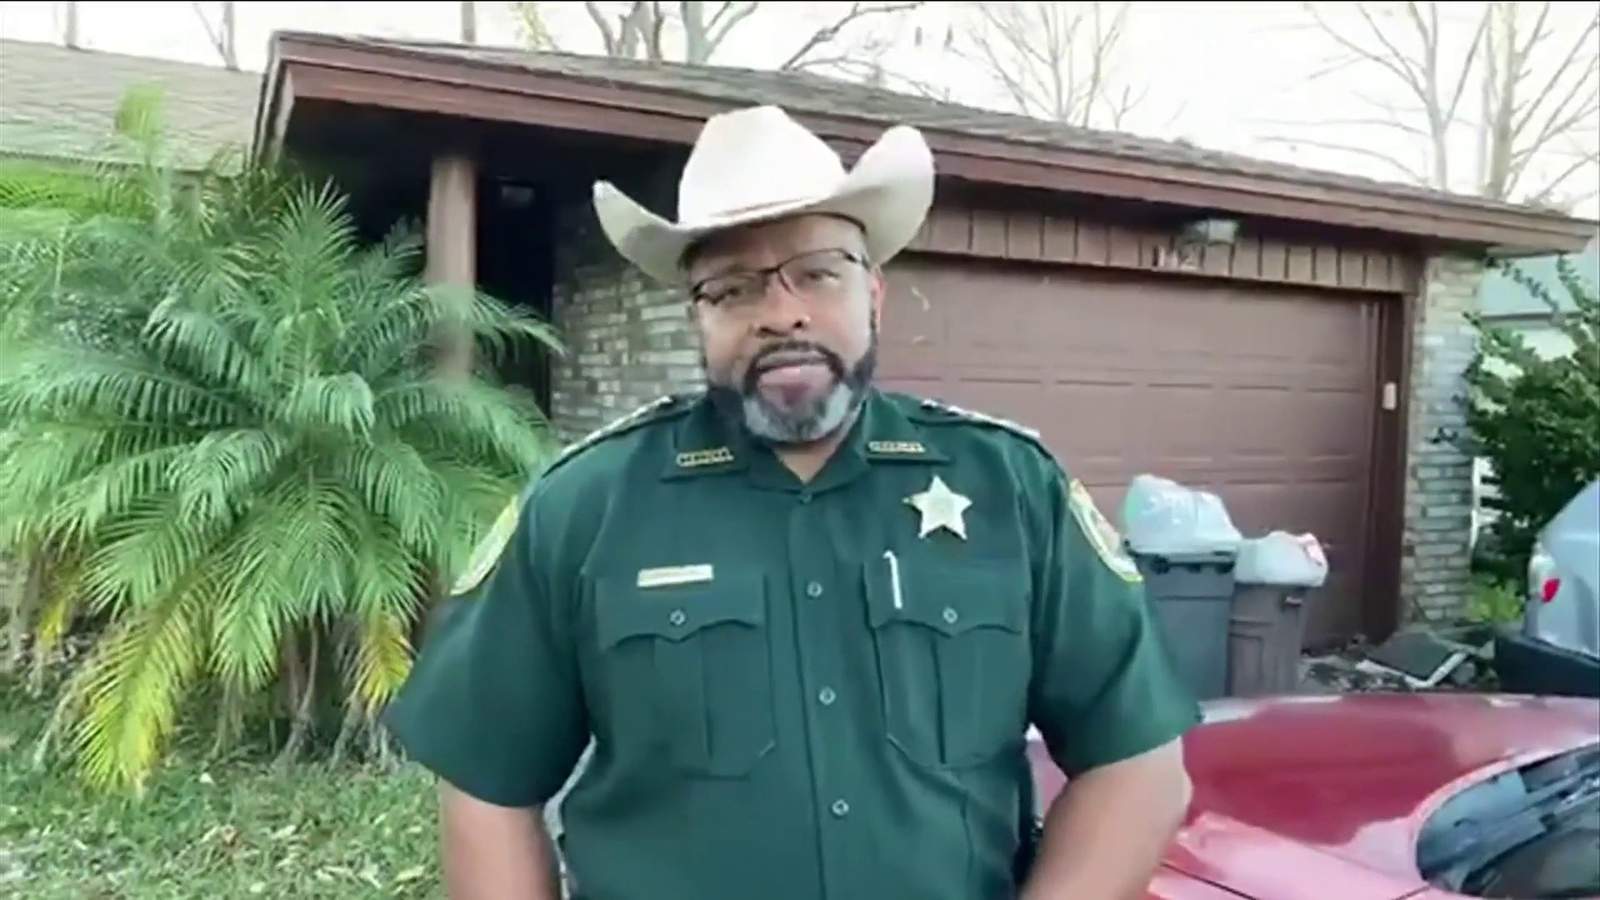 Florida sheriff: I’ll deputize gun owners if violent protests erupt